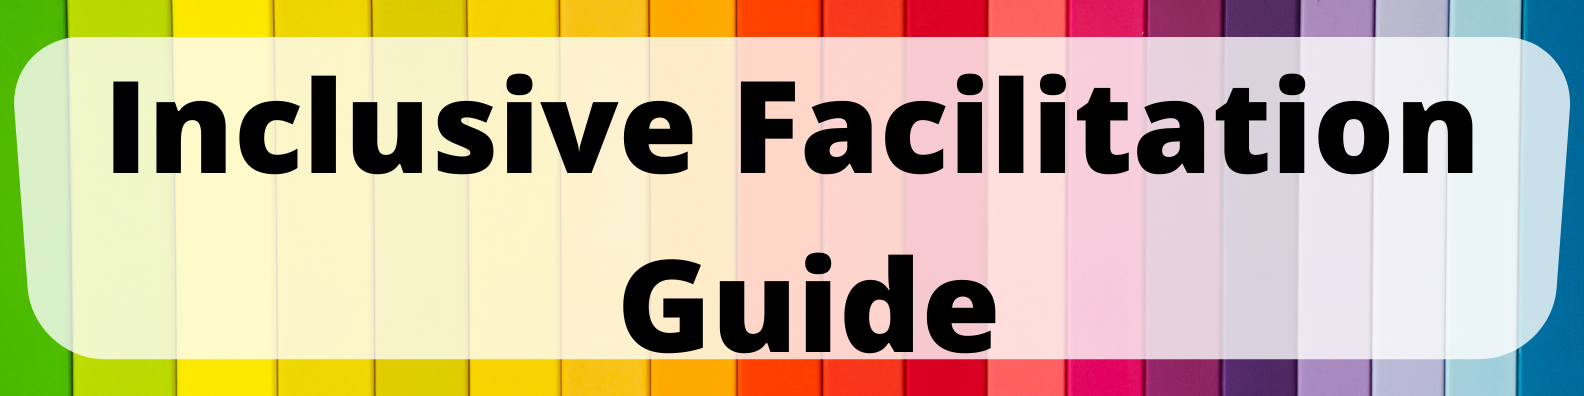 Inclusive Facilitation Guide